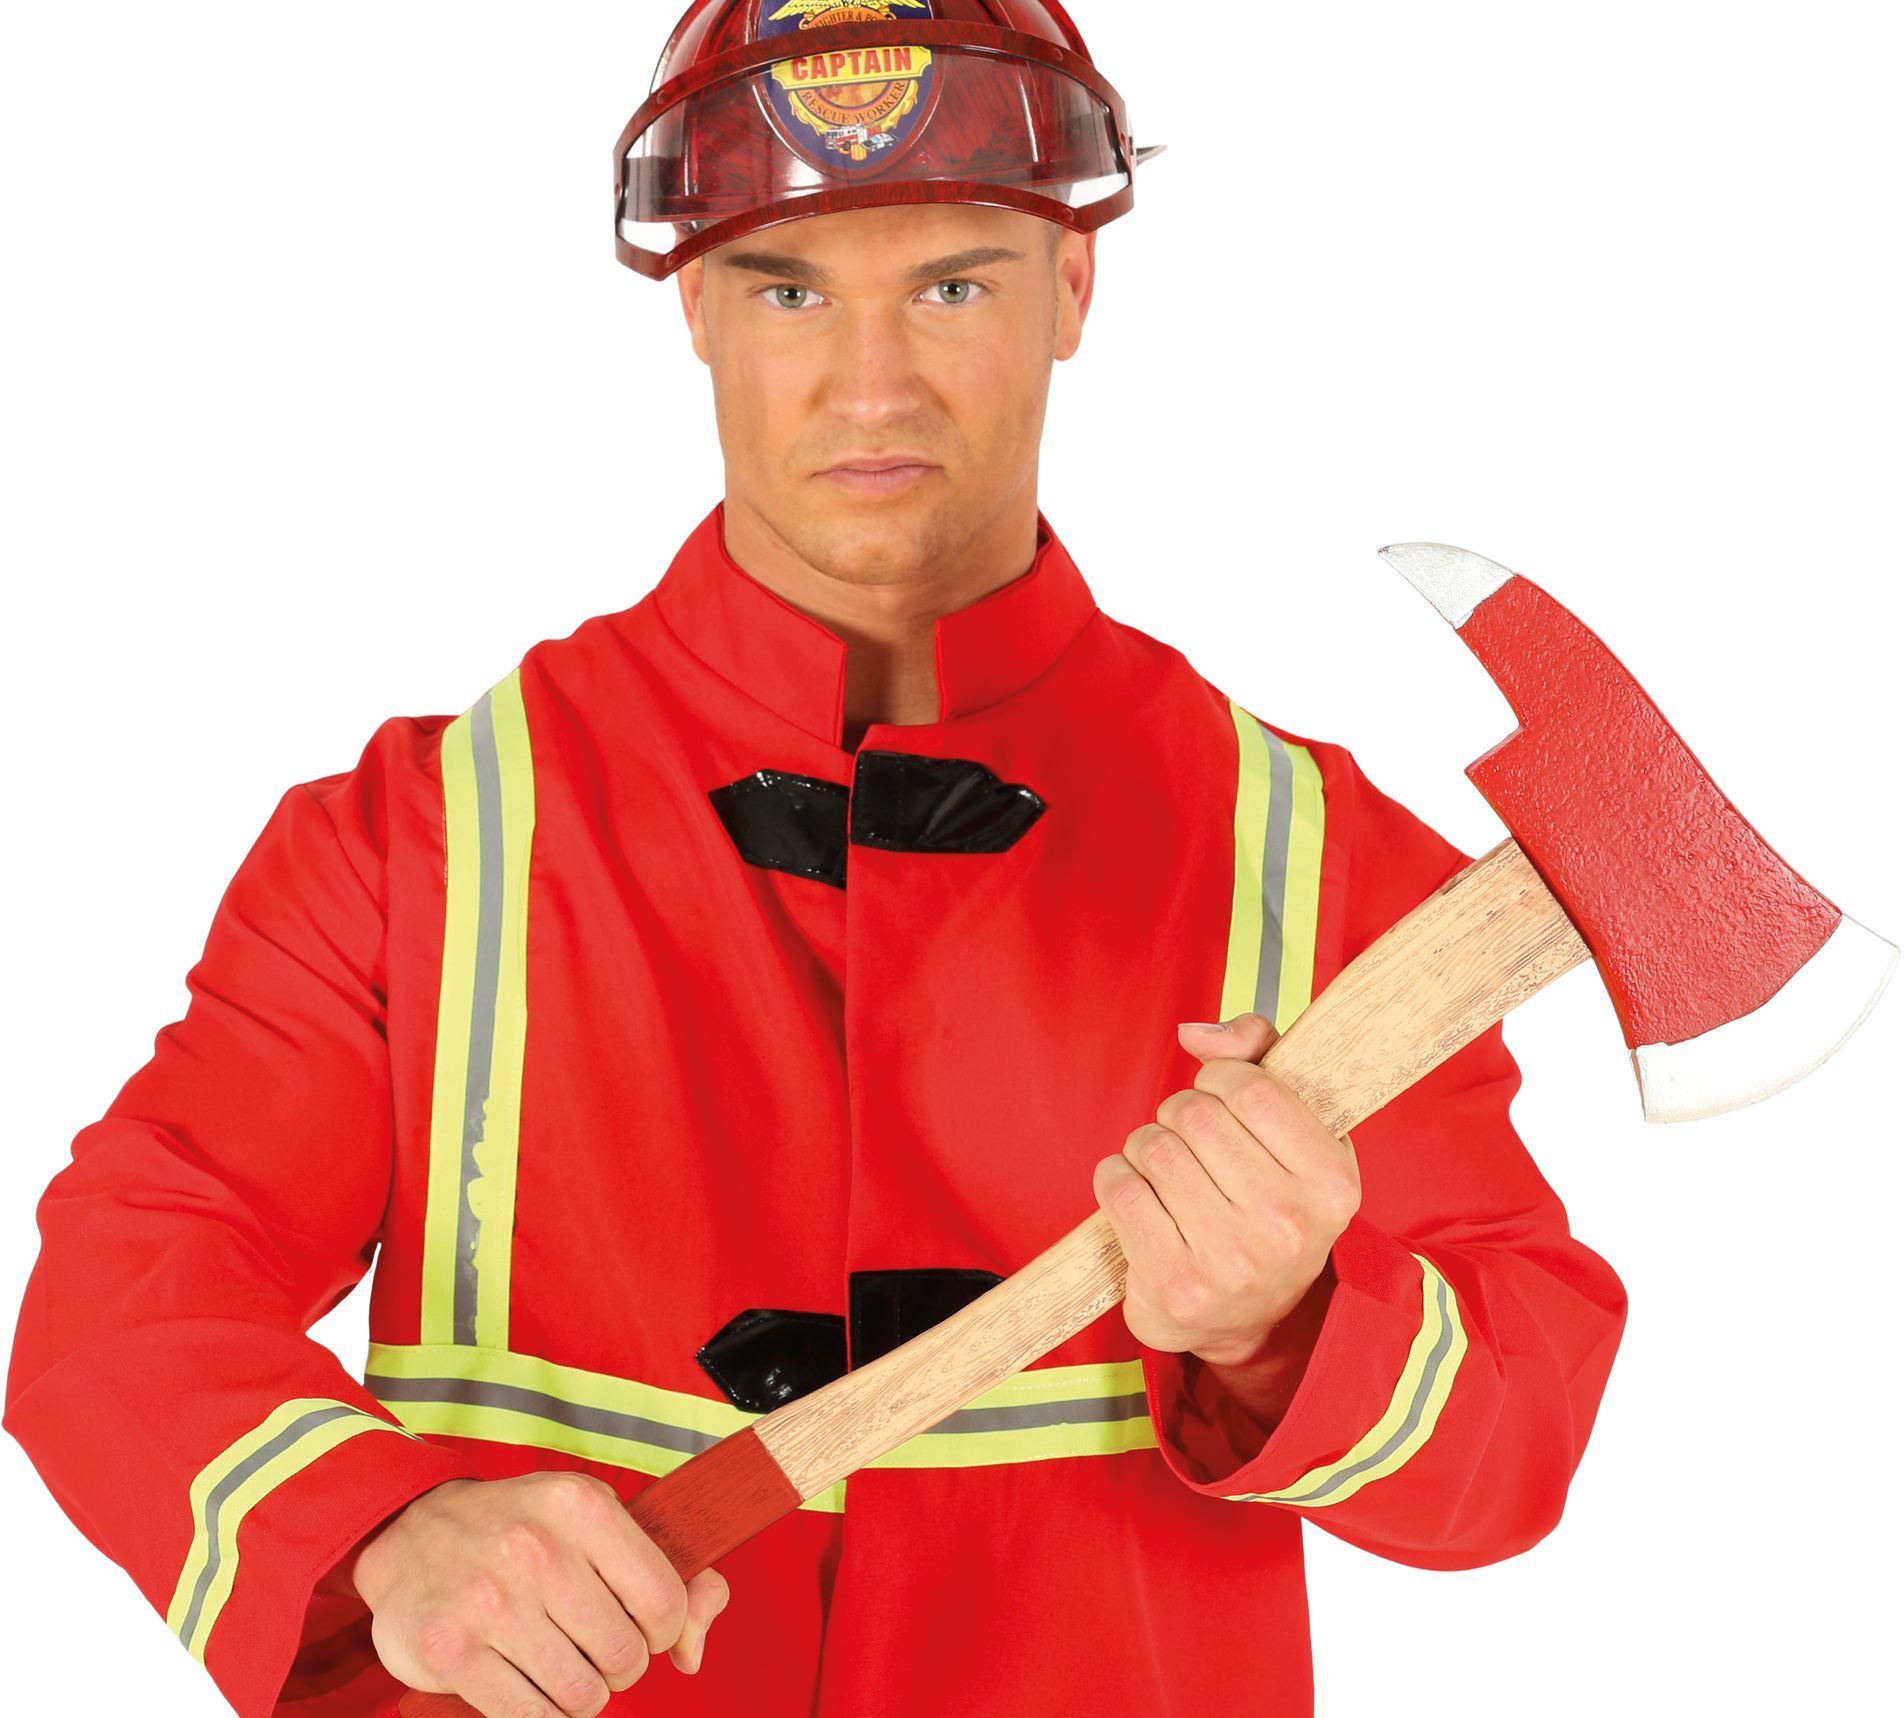 Rode brandweer hakbijl